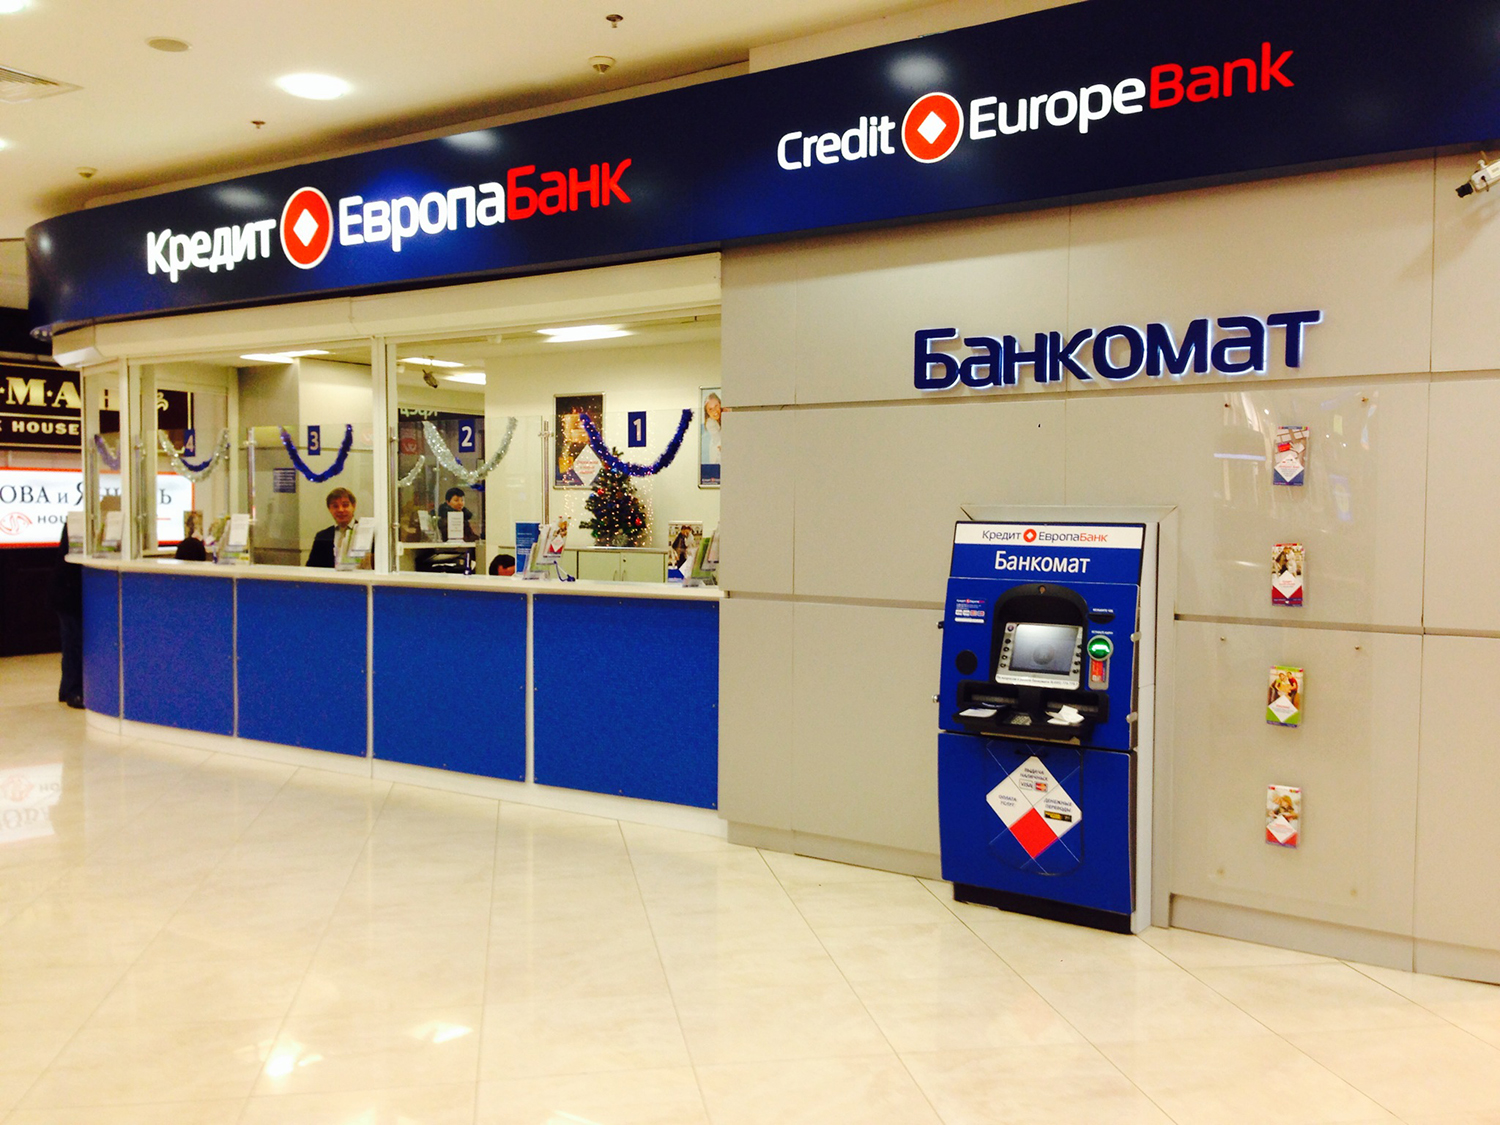 кредит европа банк на проспекте